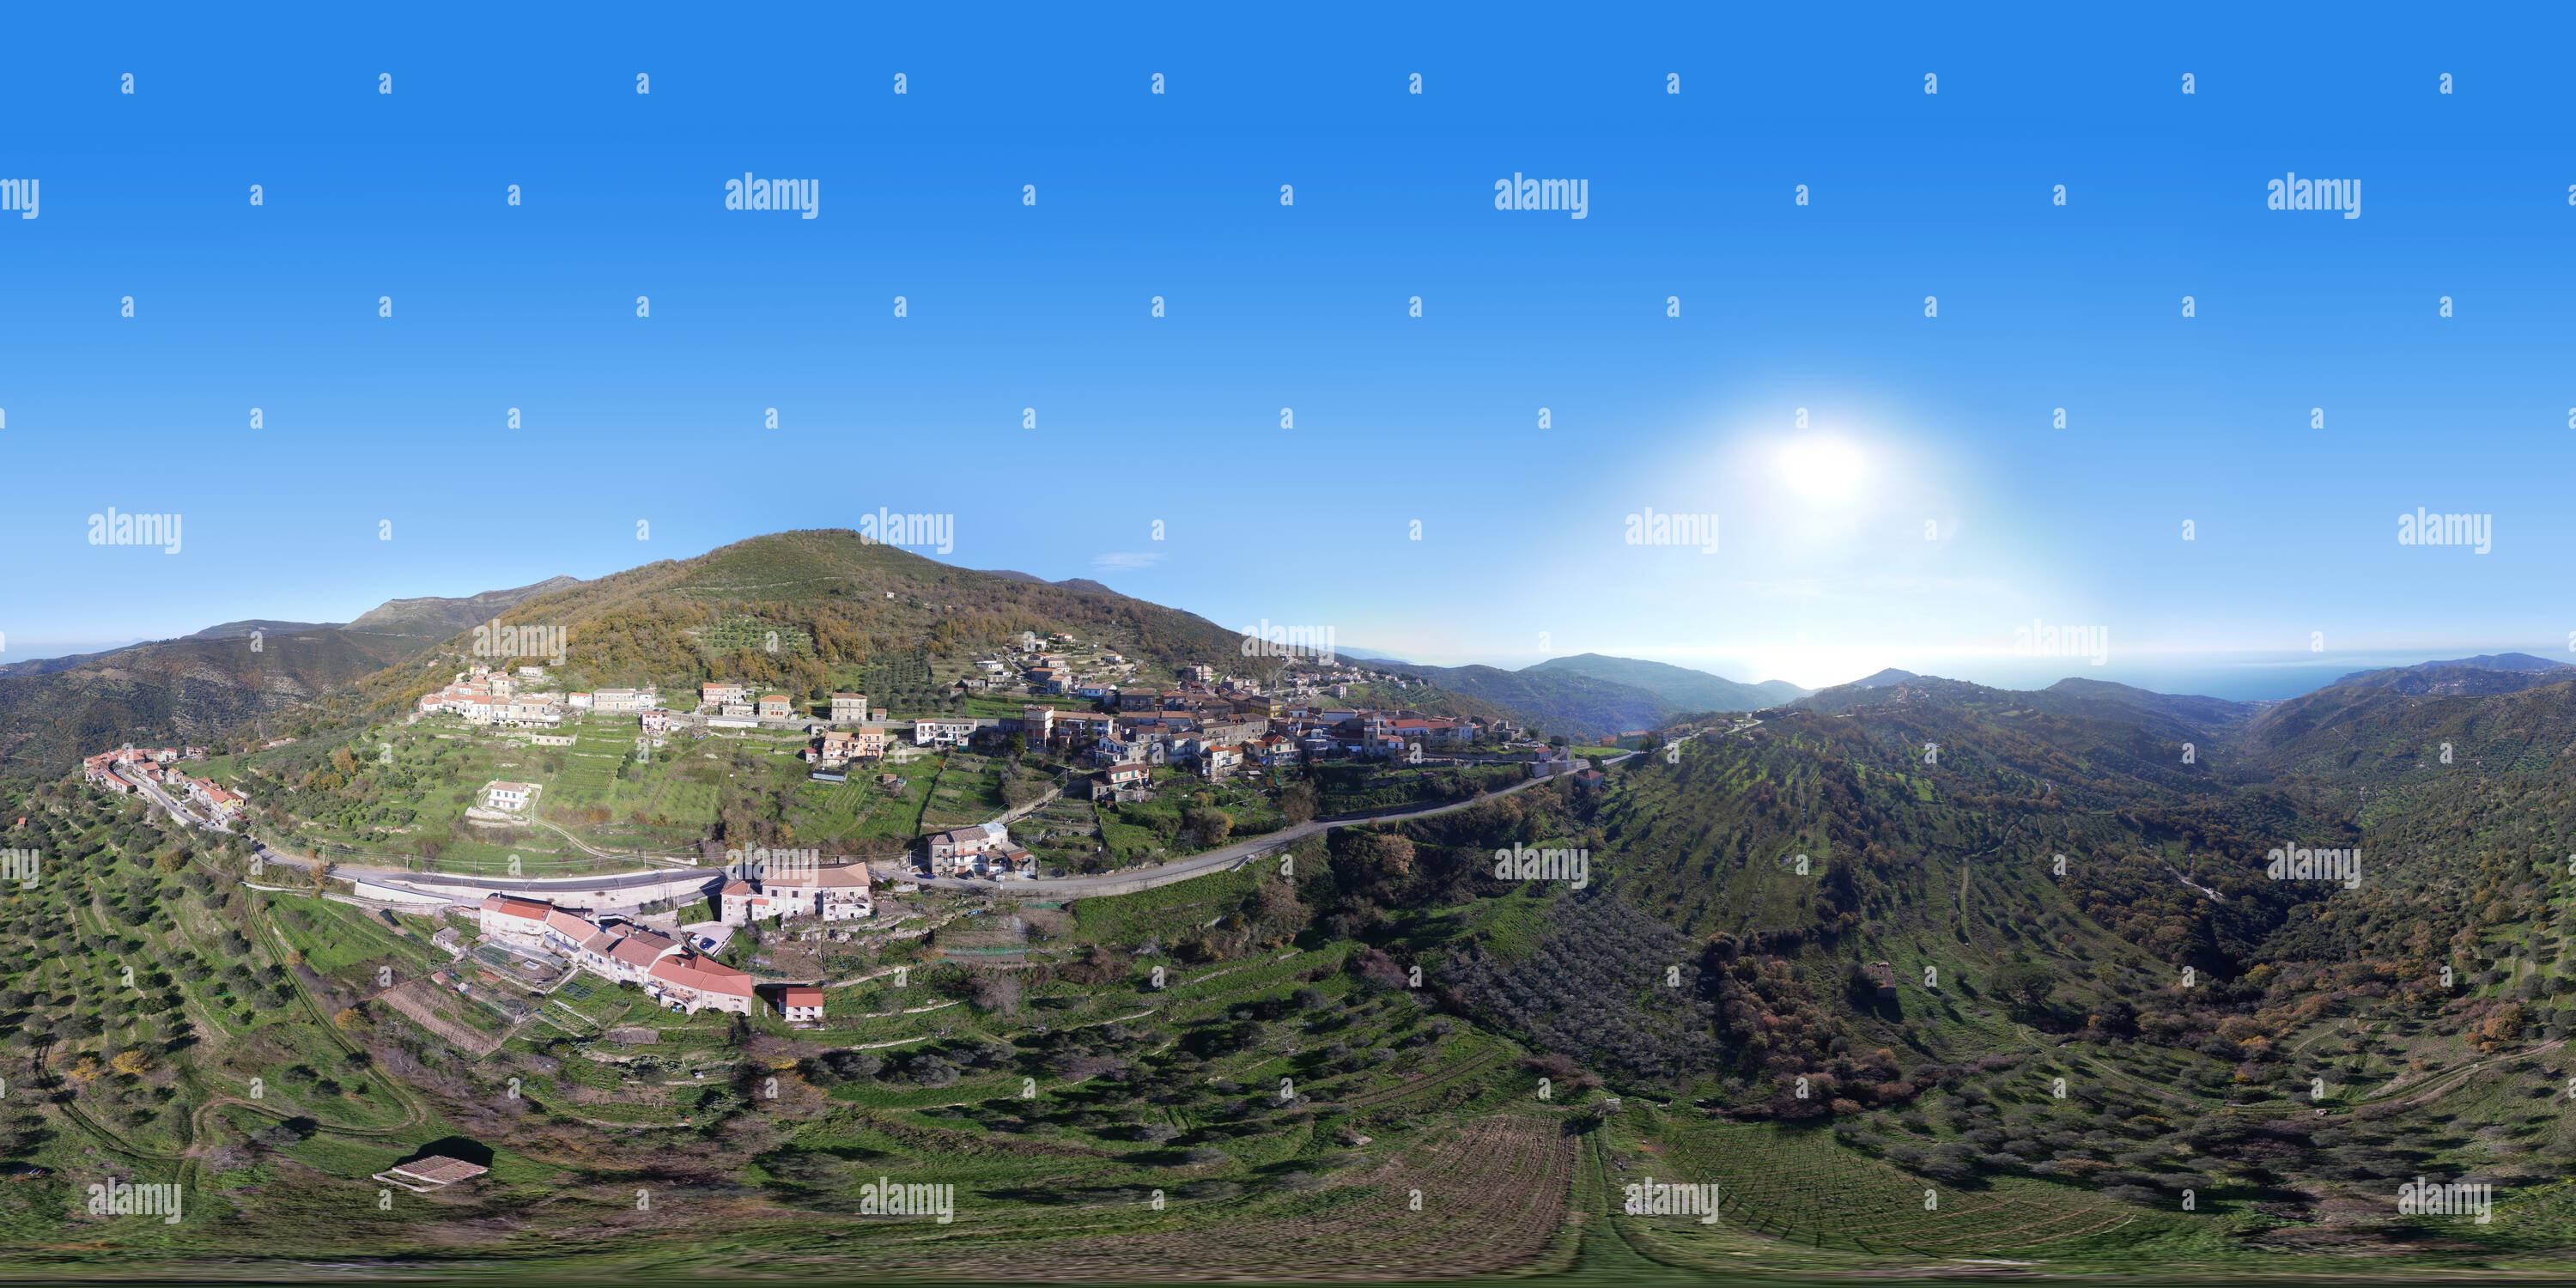 Visualizzazione panoramica a 360 gradi di San Mauro Cilento